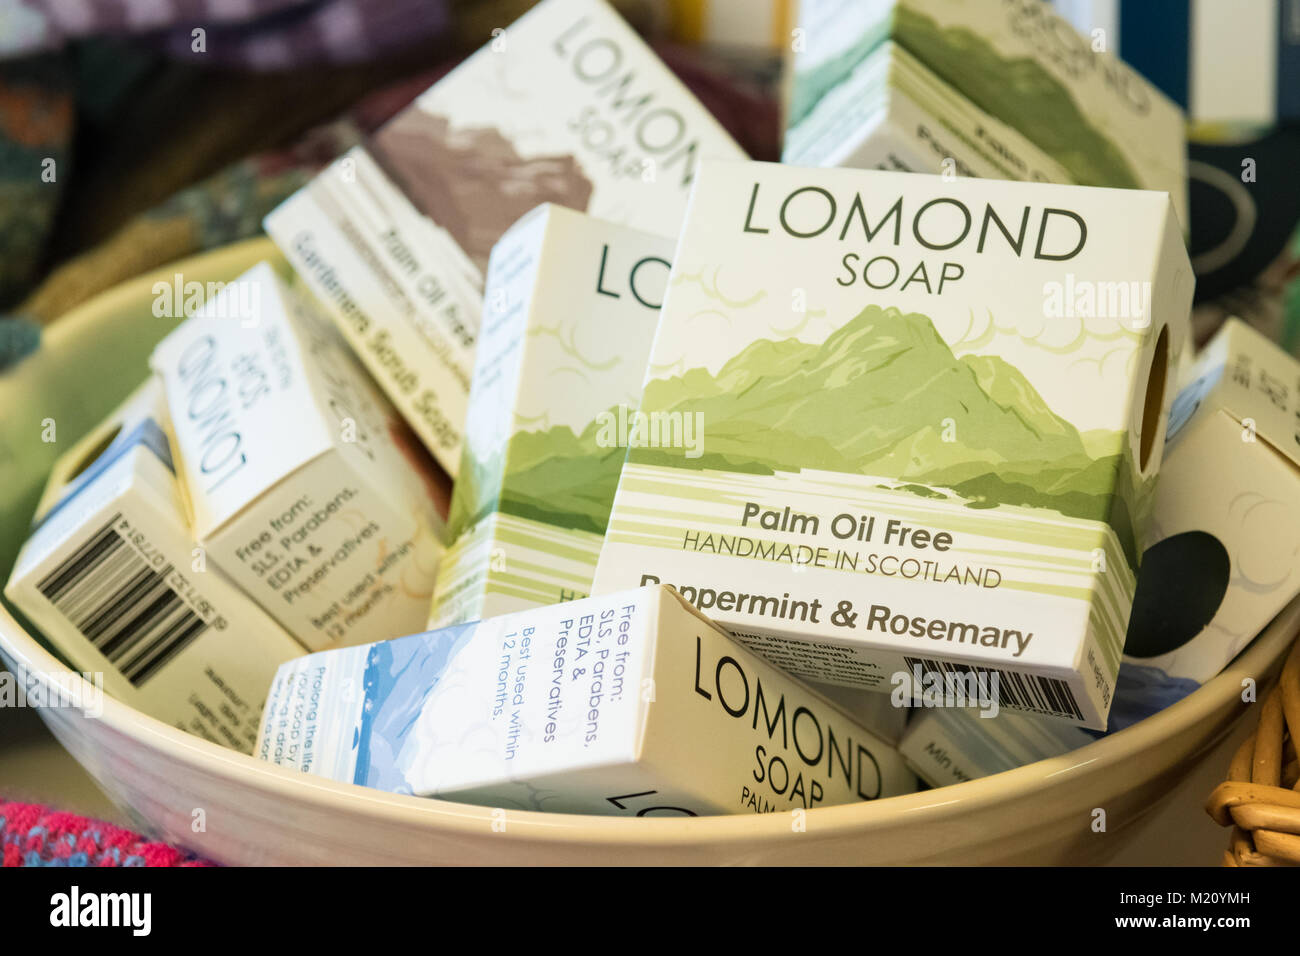 Palm Oil Free soap - Lomond Soap - sapone artigianale realizzato in Scozia, Regno Unito Foto Stock